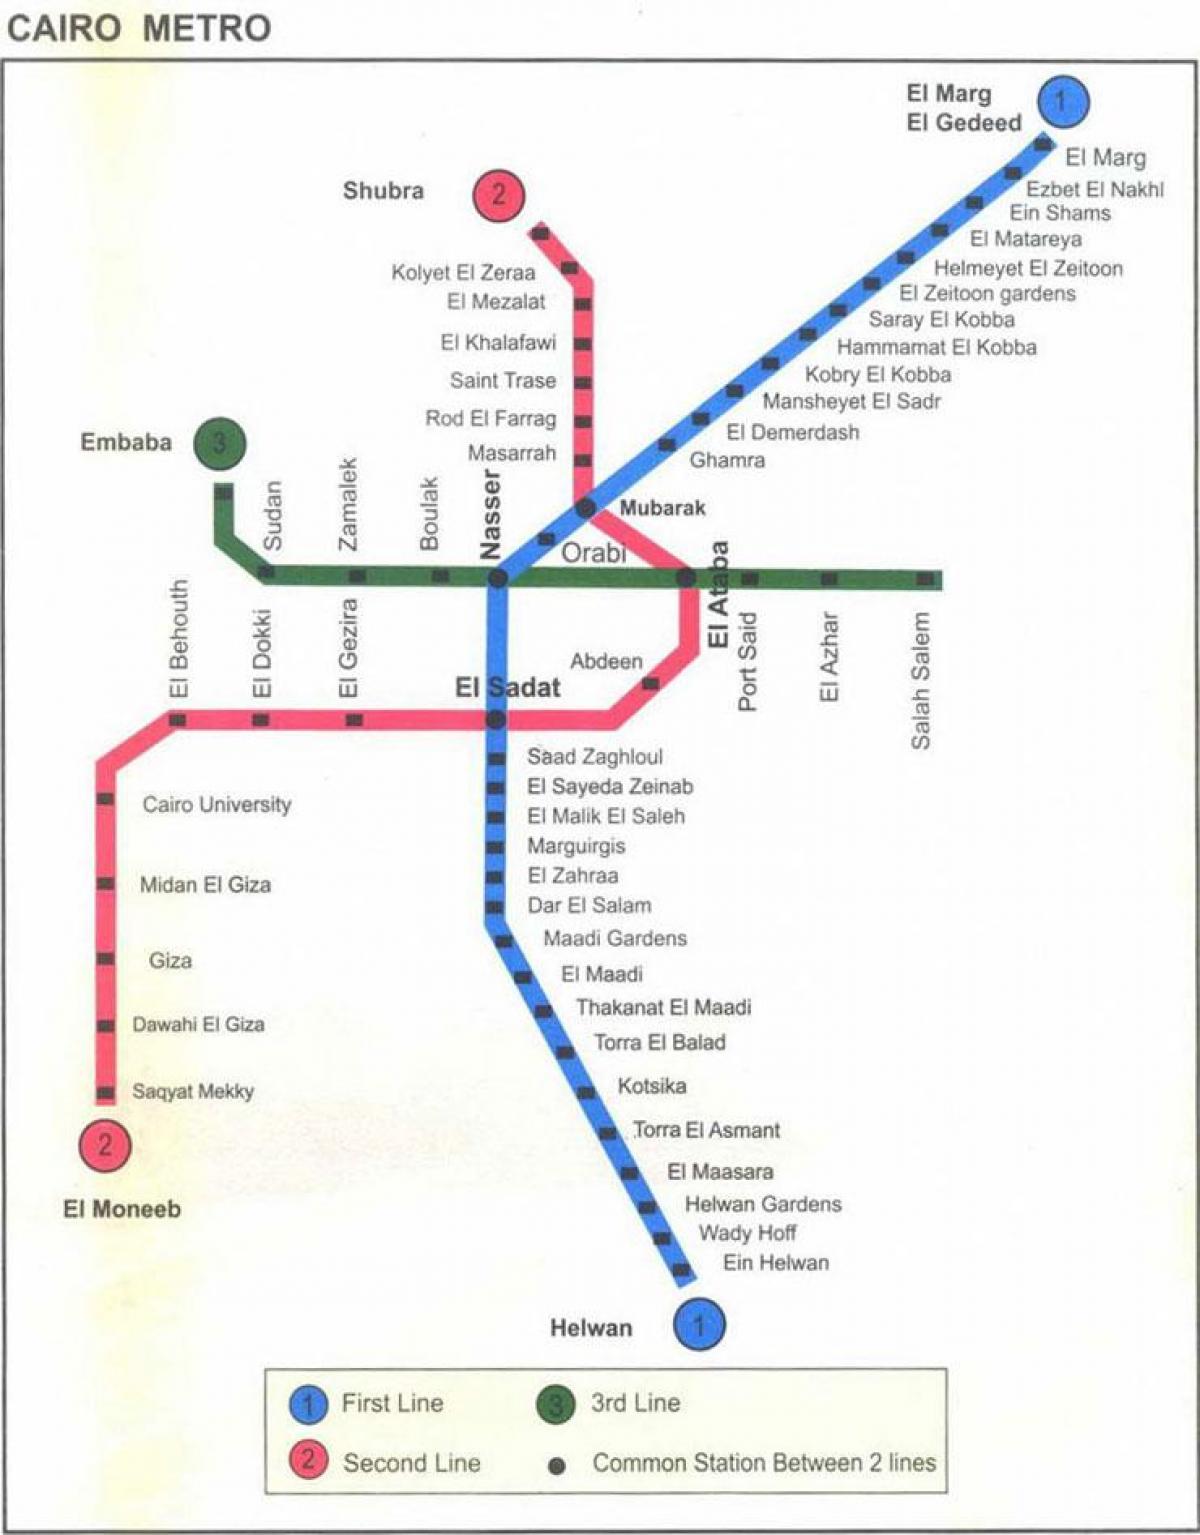 χάρτης του μετρό του καΐρου